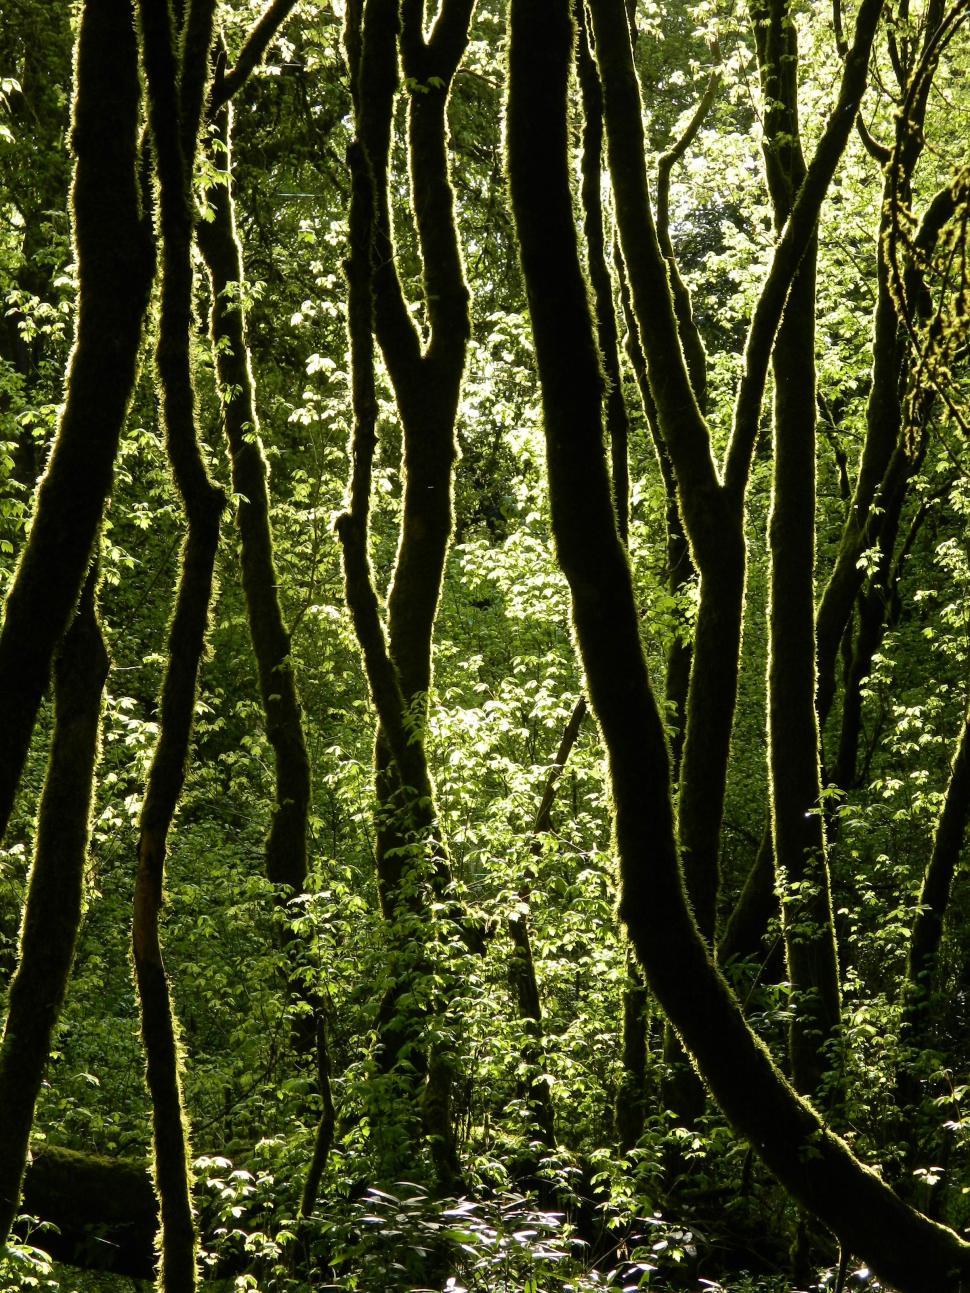 Free Image of Dense Green Forest Landscape 